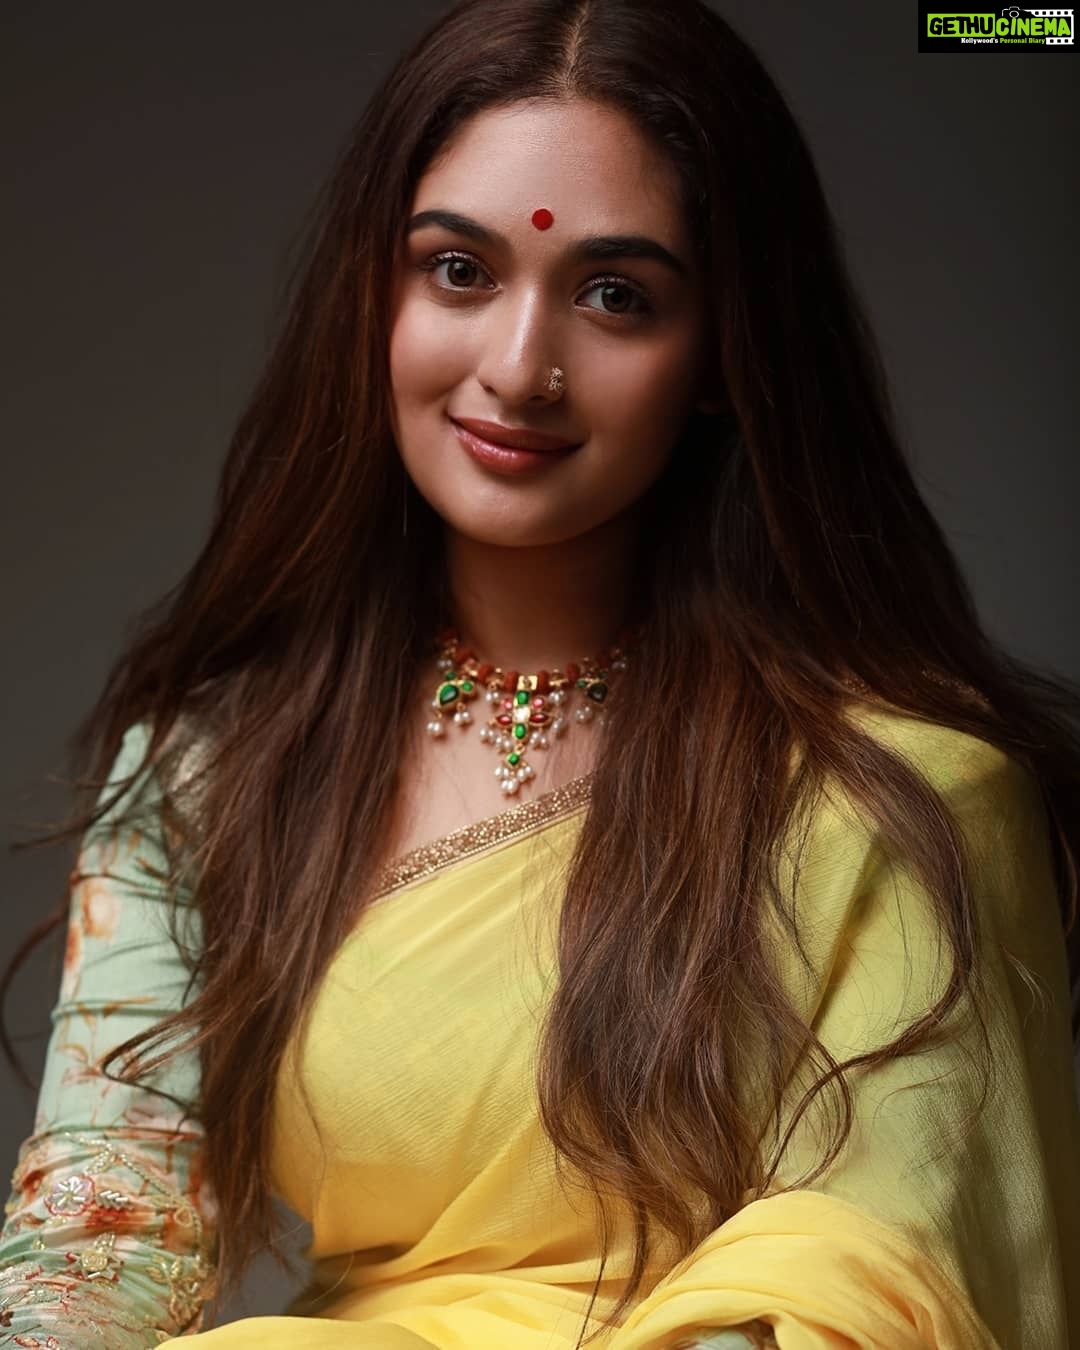 1080px x 1350px - Actress Prayaga Martin HD Photos and Wallpapers October 2019 - Gethu Cinema